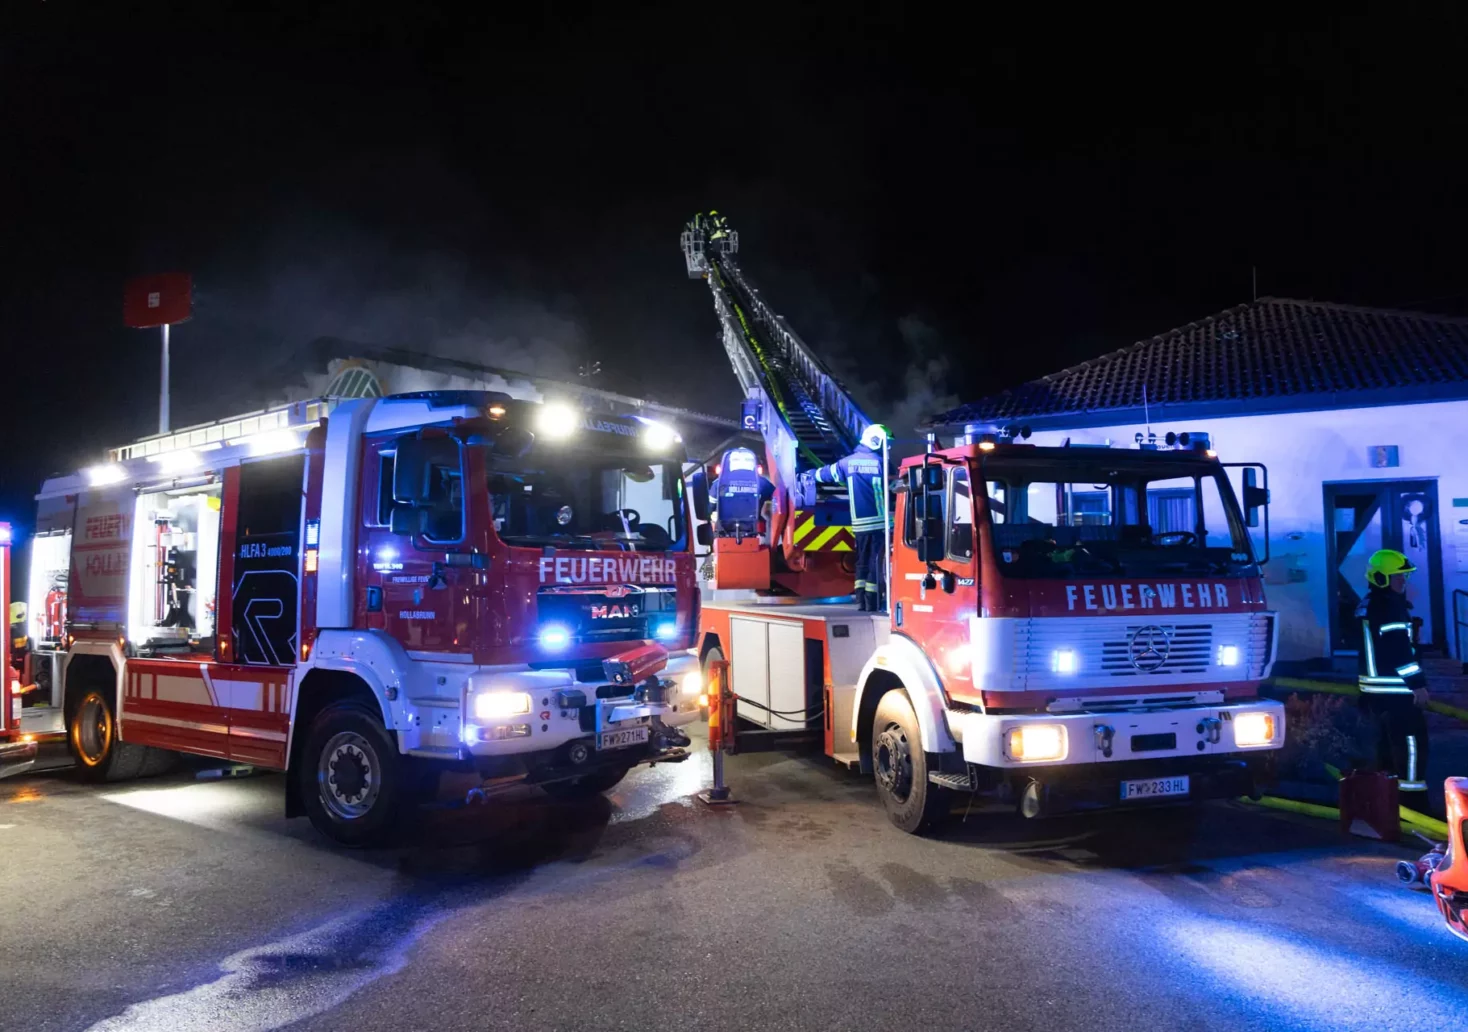 Foto in Beitrag von 5min.at: Zu sehen sind zwei Feuerwehrautos in der Nacht.